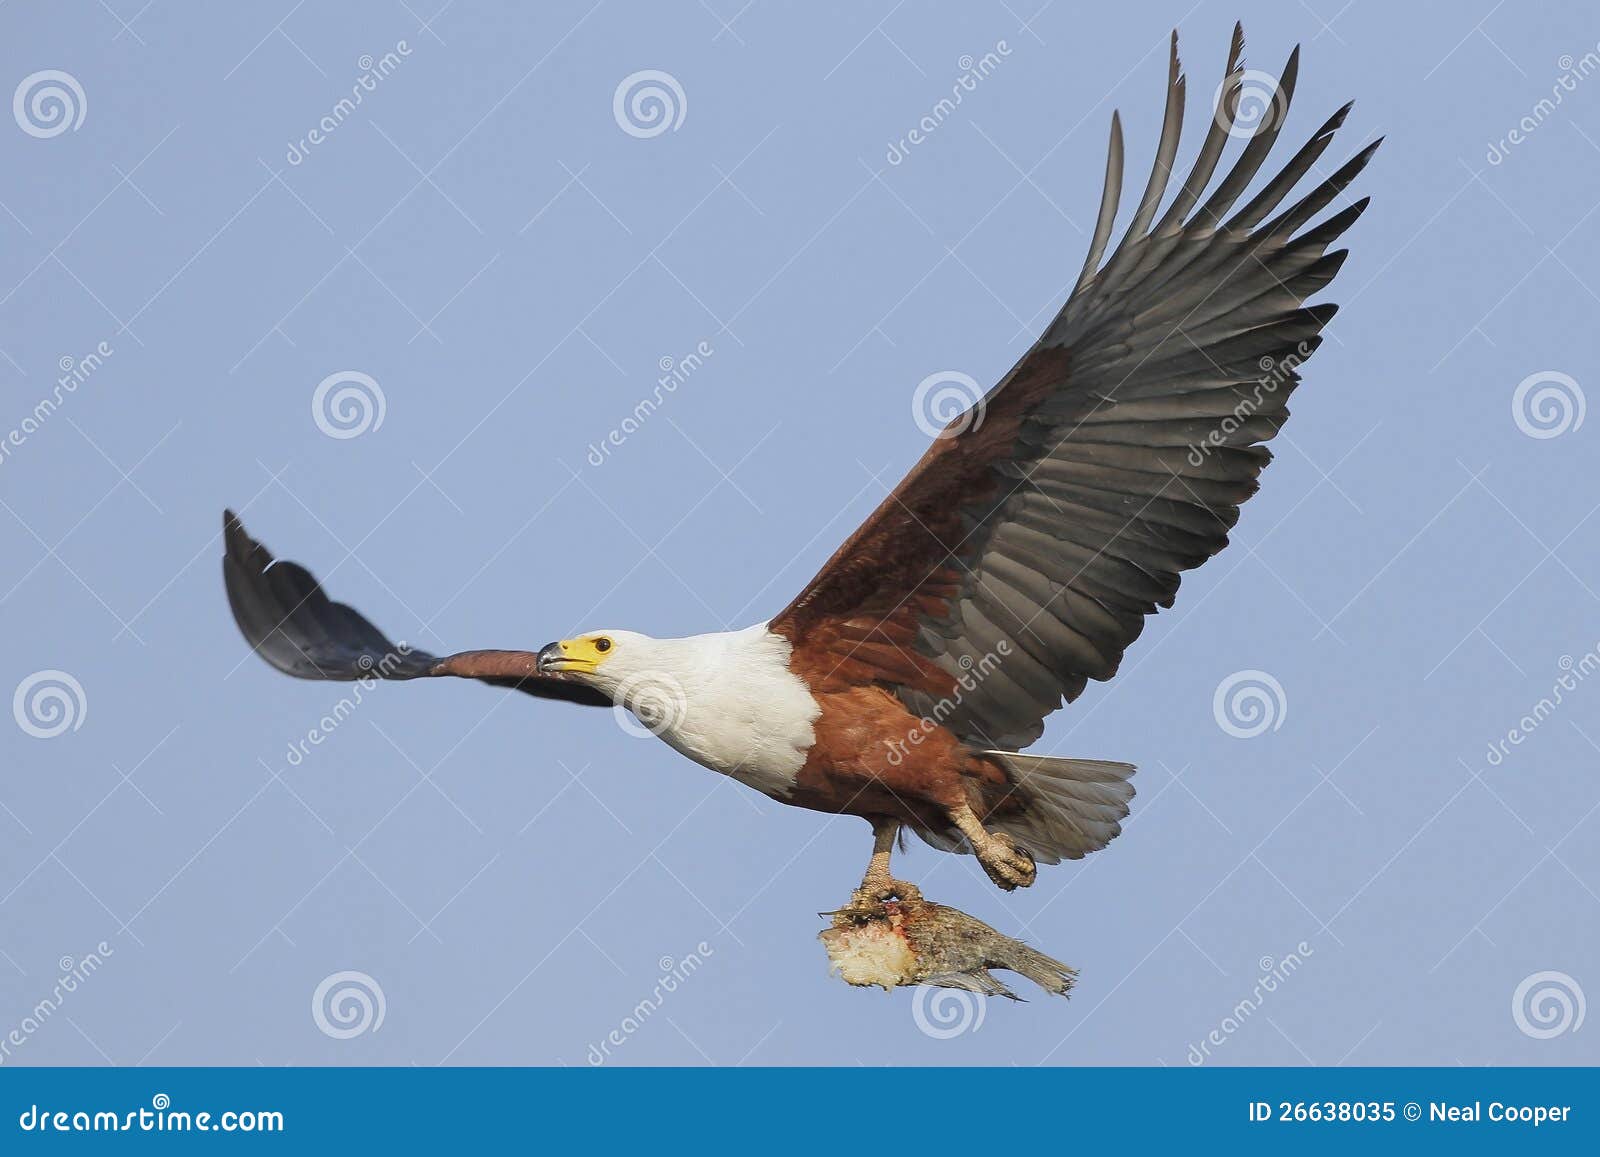 fish eagle clipart - photo #24